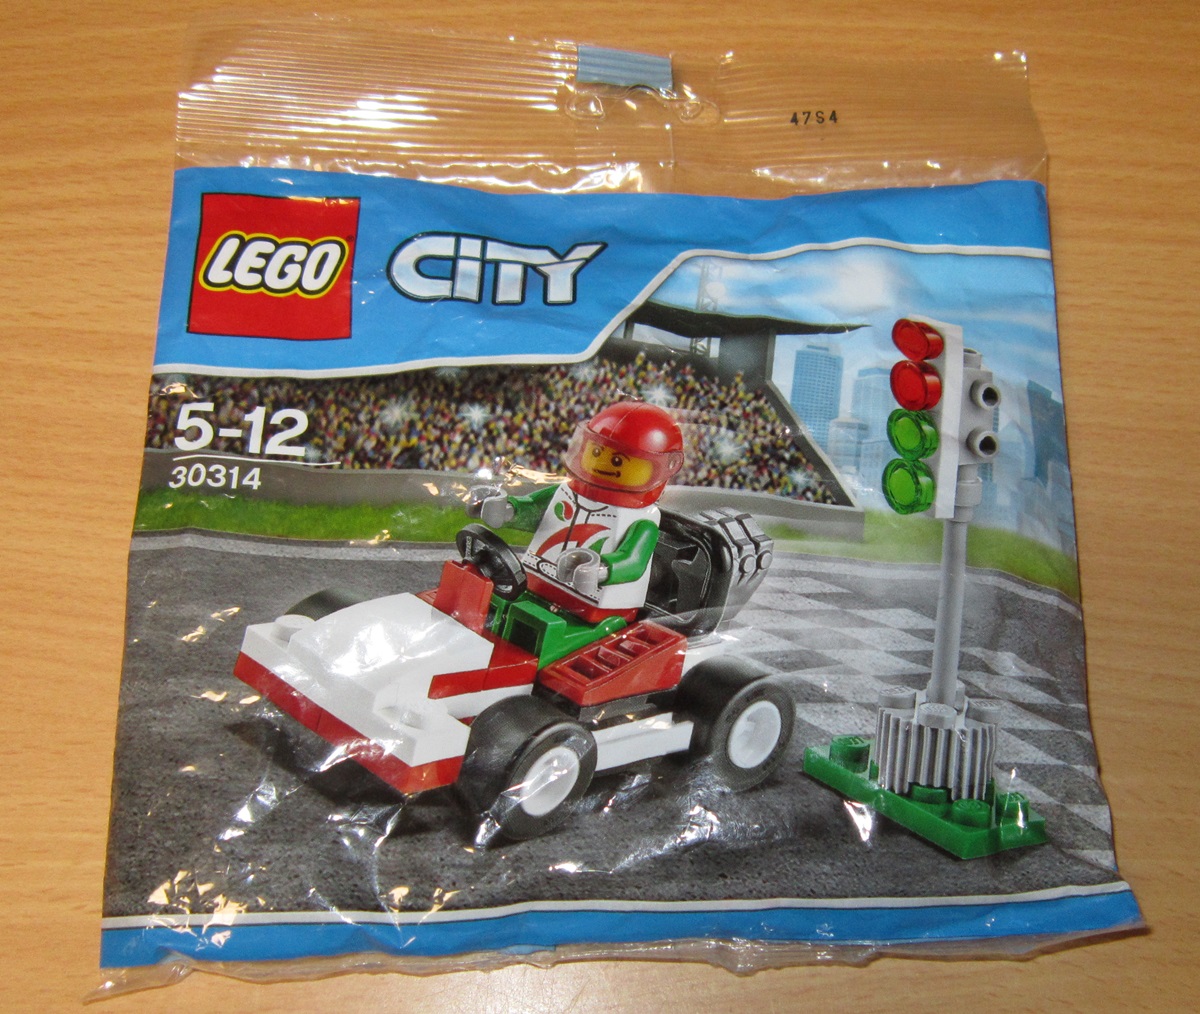 0050 Lego City 30314